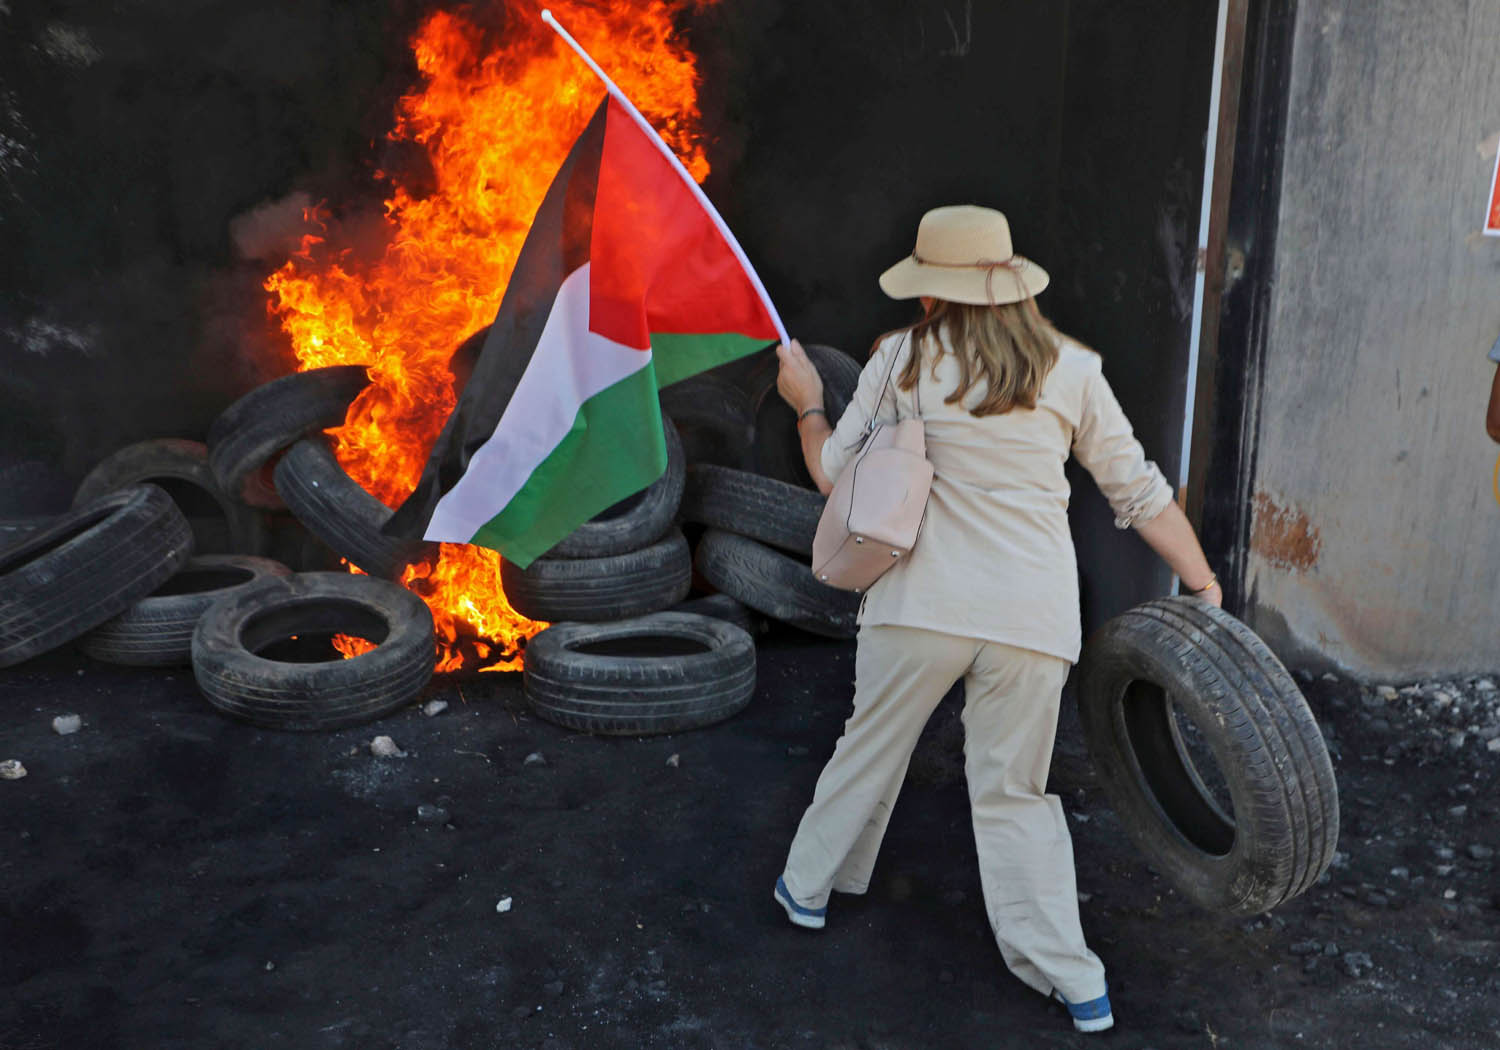 ناشطة غربية ترمي اطارات على كوم يحترق في الضفة الغربية